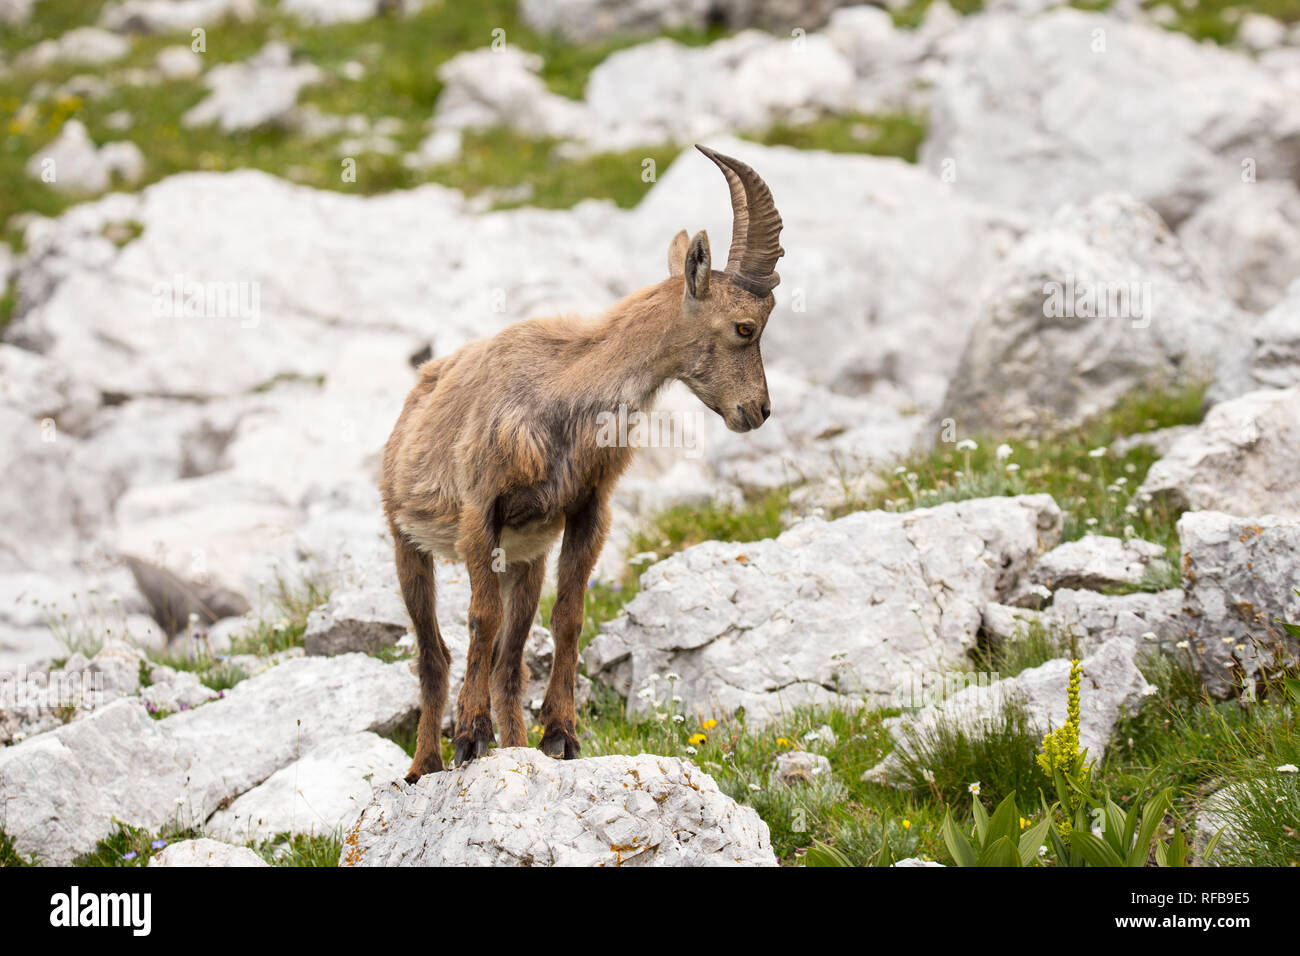 Alpine ibex (Capra ibex) perched on rock Stock Photo